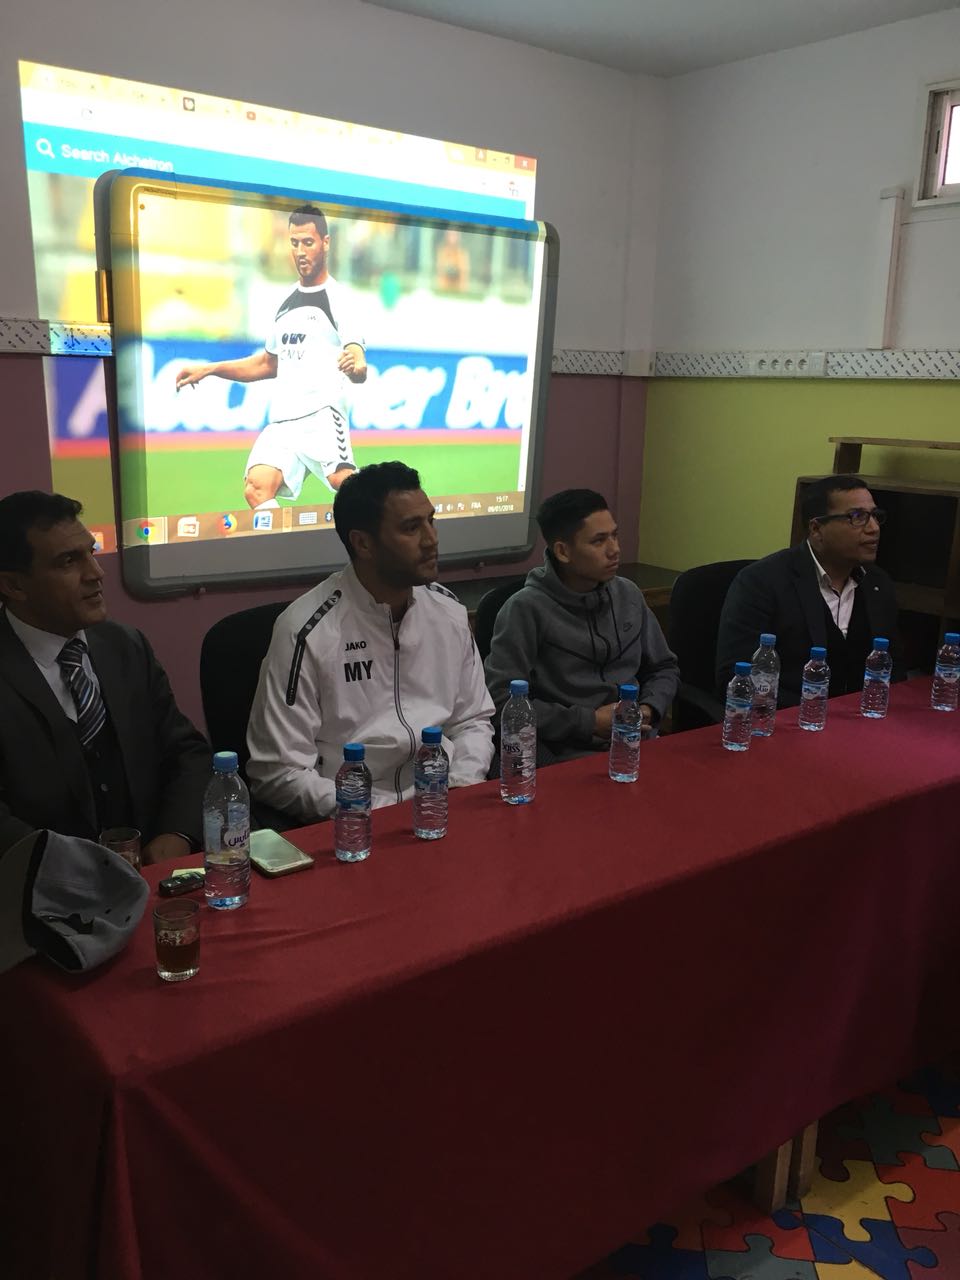 اللاعب الدولي السابق يوسف المختاري يُعرف بالمؤهلات السياحية لجهات المغرب عبر أكاديميته لكرة القدم